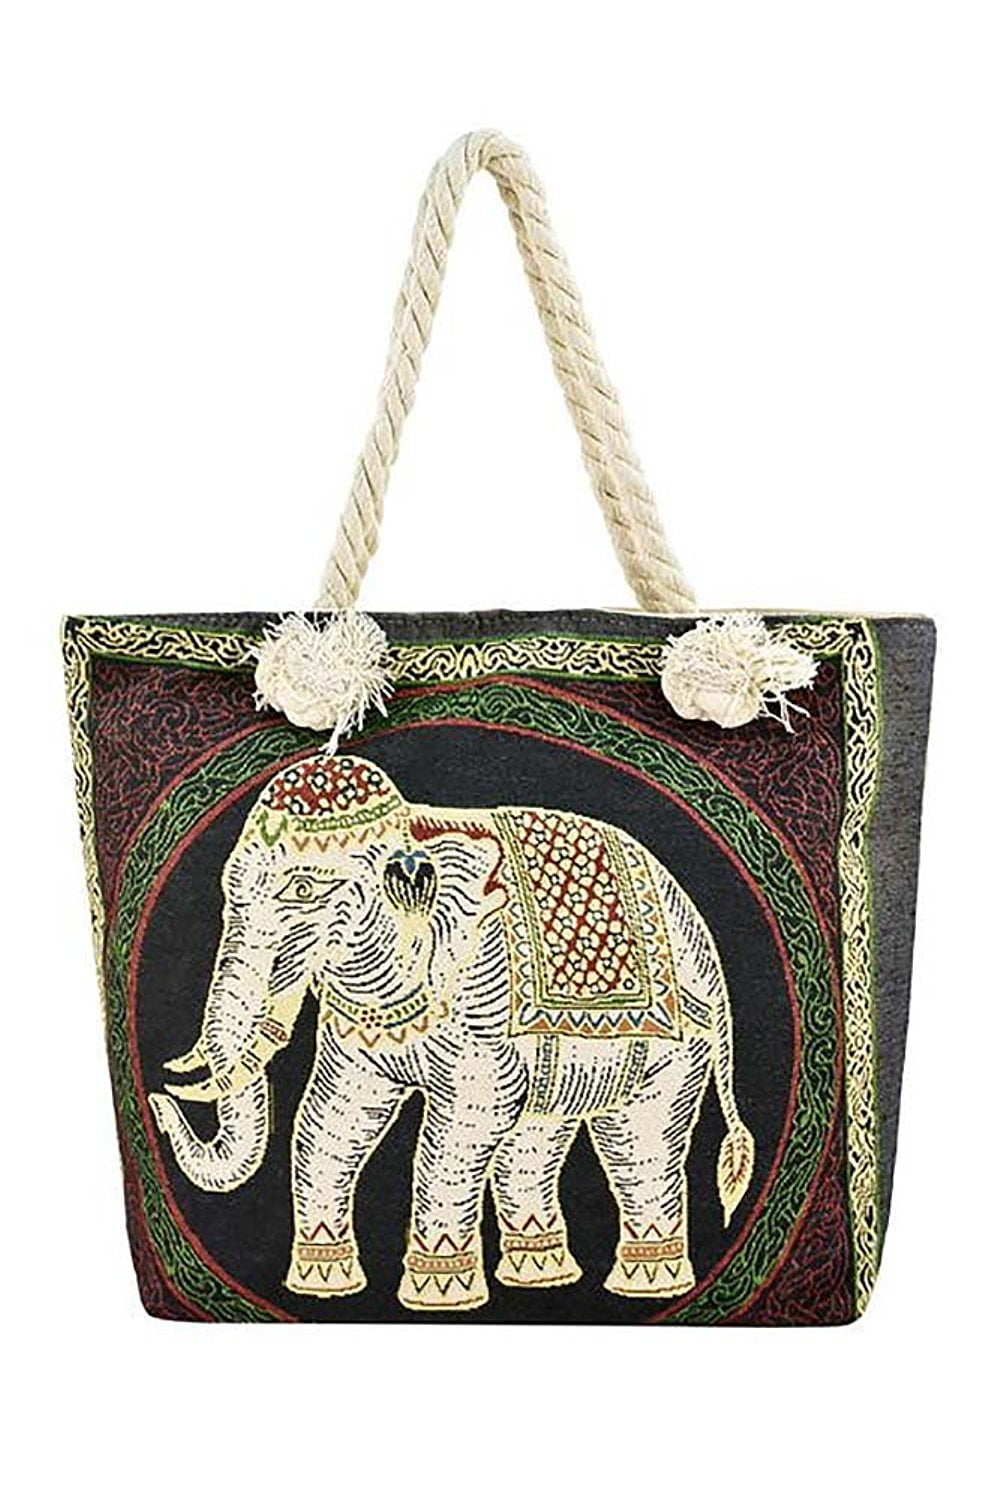 Elephant Embroidered Jute Yoga Mat Carrier Bag With Adjustable Shoulder Strap US 